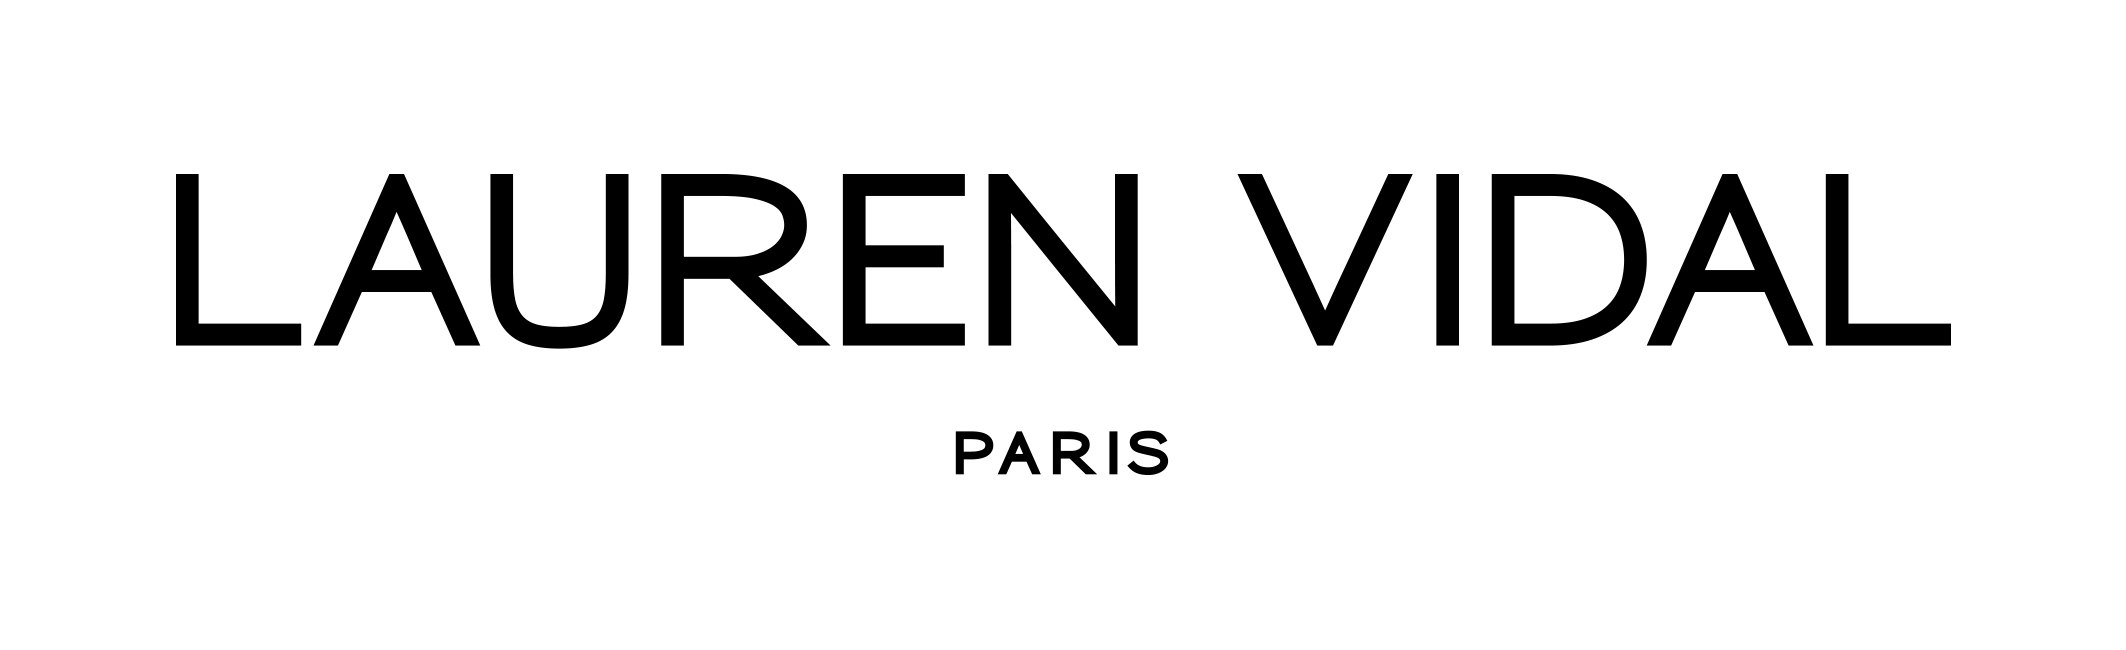 Lauren-Vidal-Paris-Logo.jpg